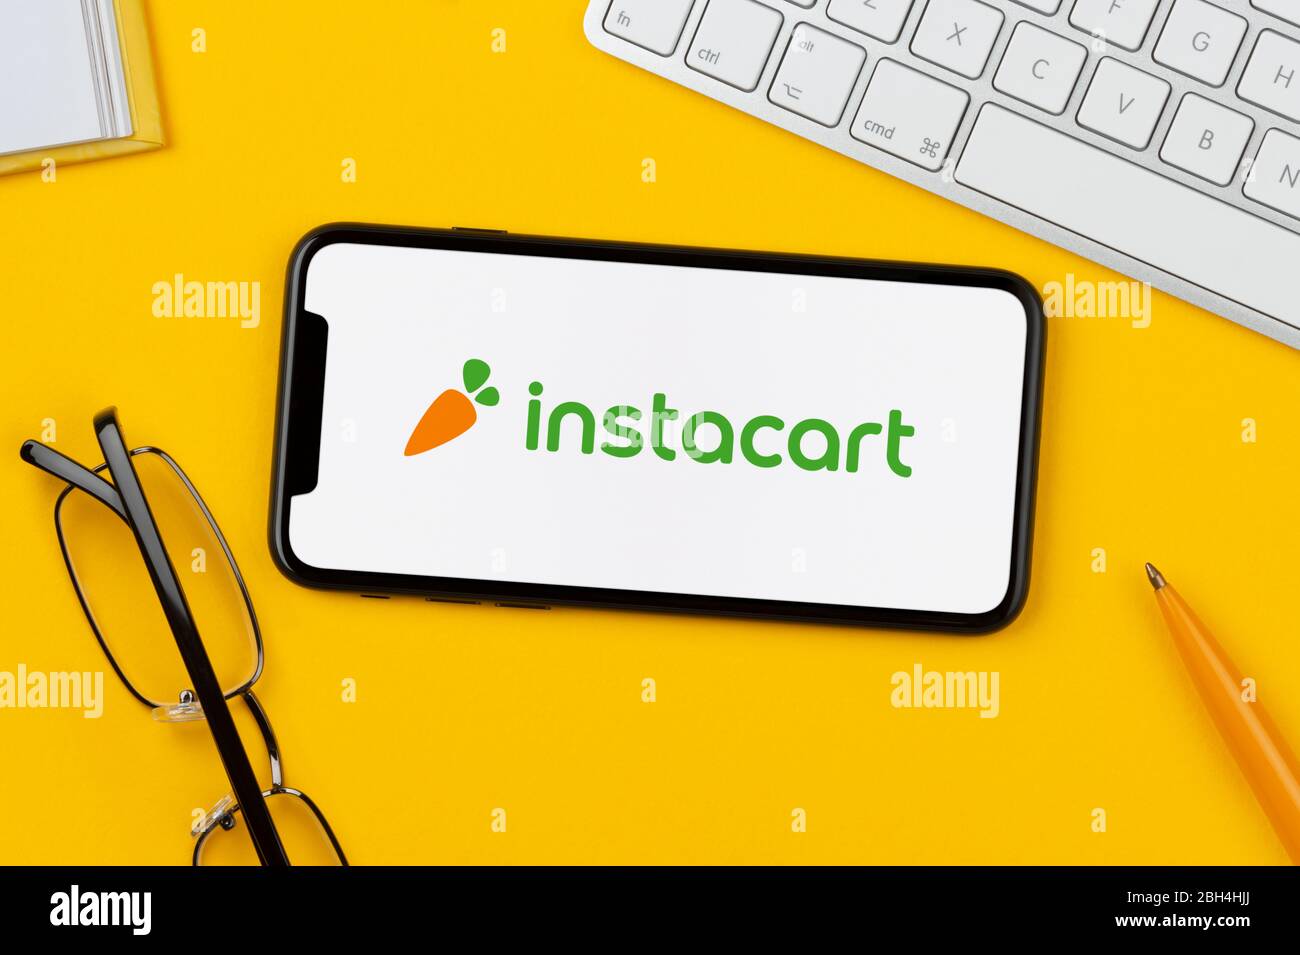 Uno smartphone con il logo Instacart è posizionato su uno sfondo giallo insieme a tastiera, occhiali, penna e libro (solo per uso editoriale). Foto Stock